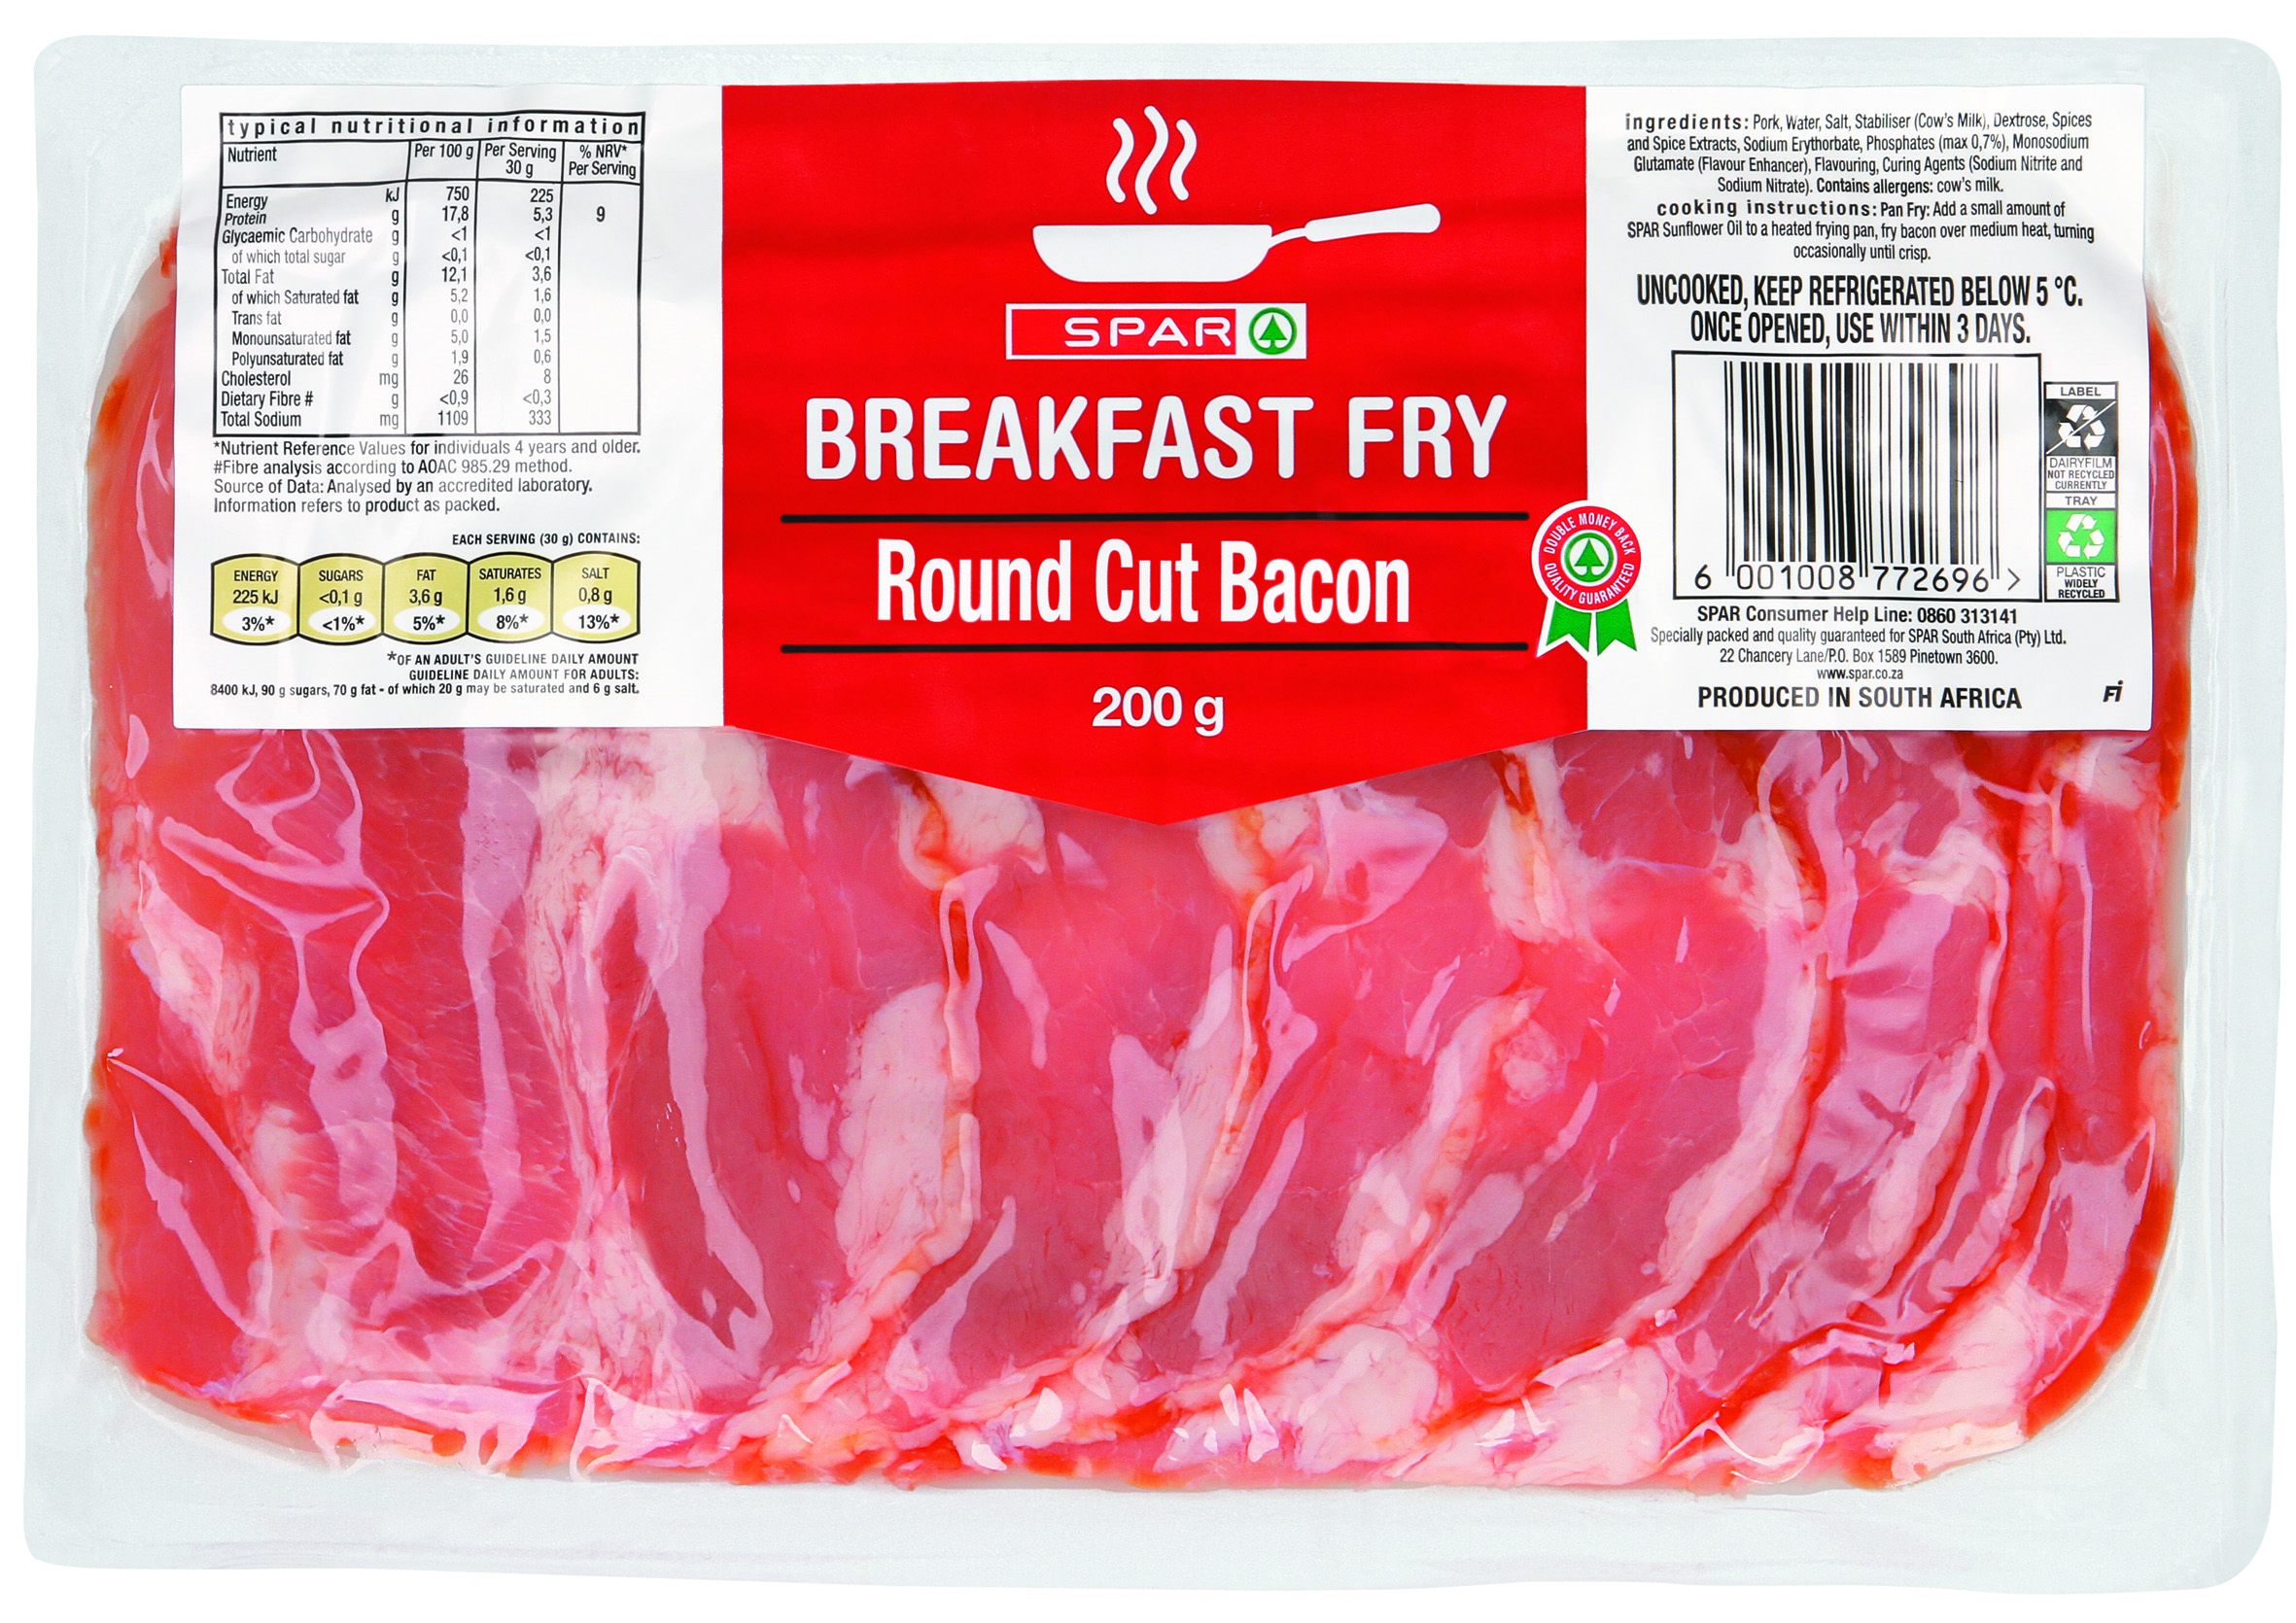 breakfast fry - round cut bacon